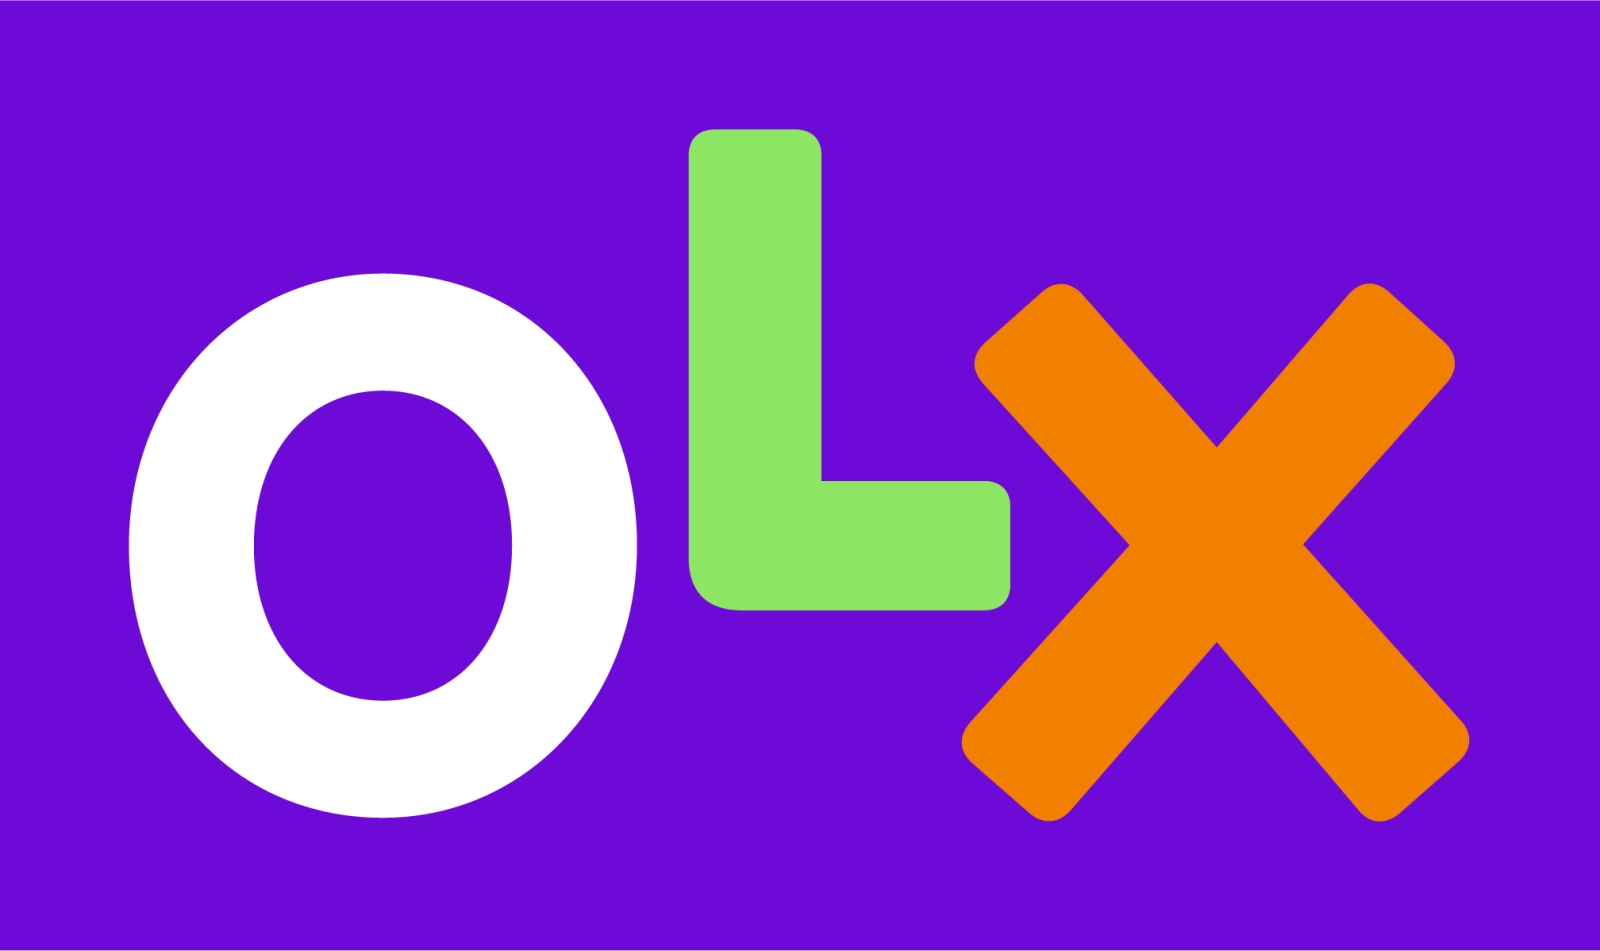 OLX kondigt gratis verzending aan voor bestellingen gedurende de maand december